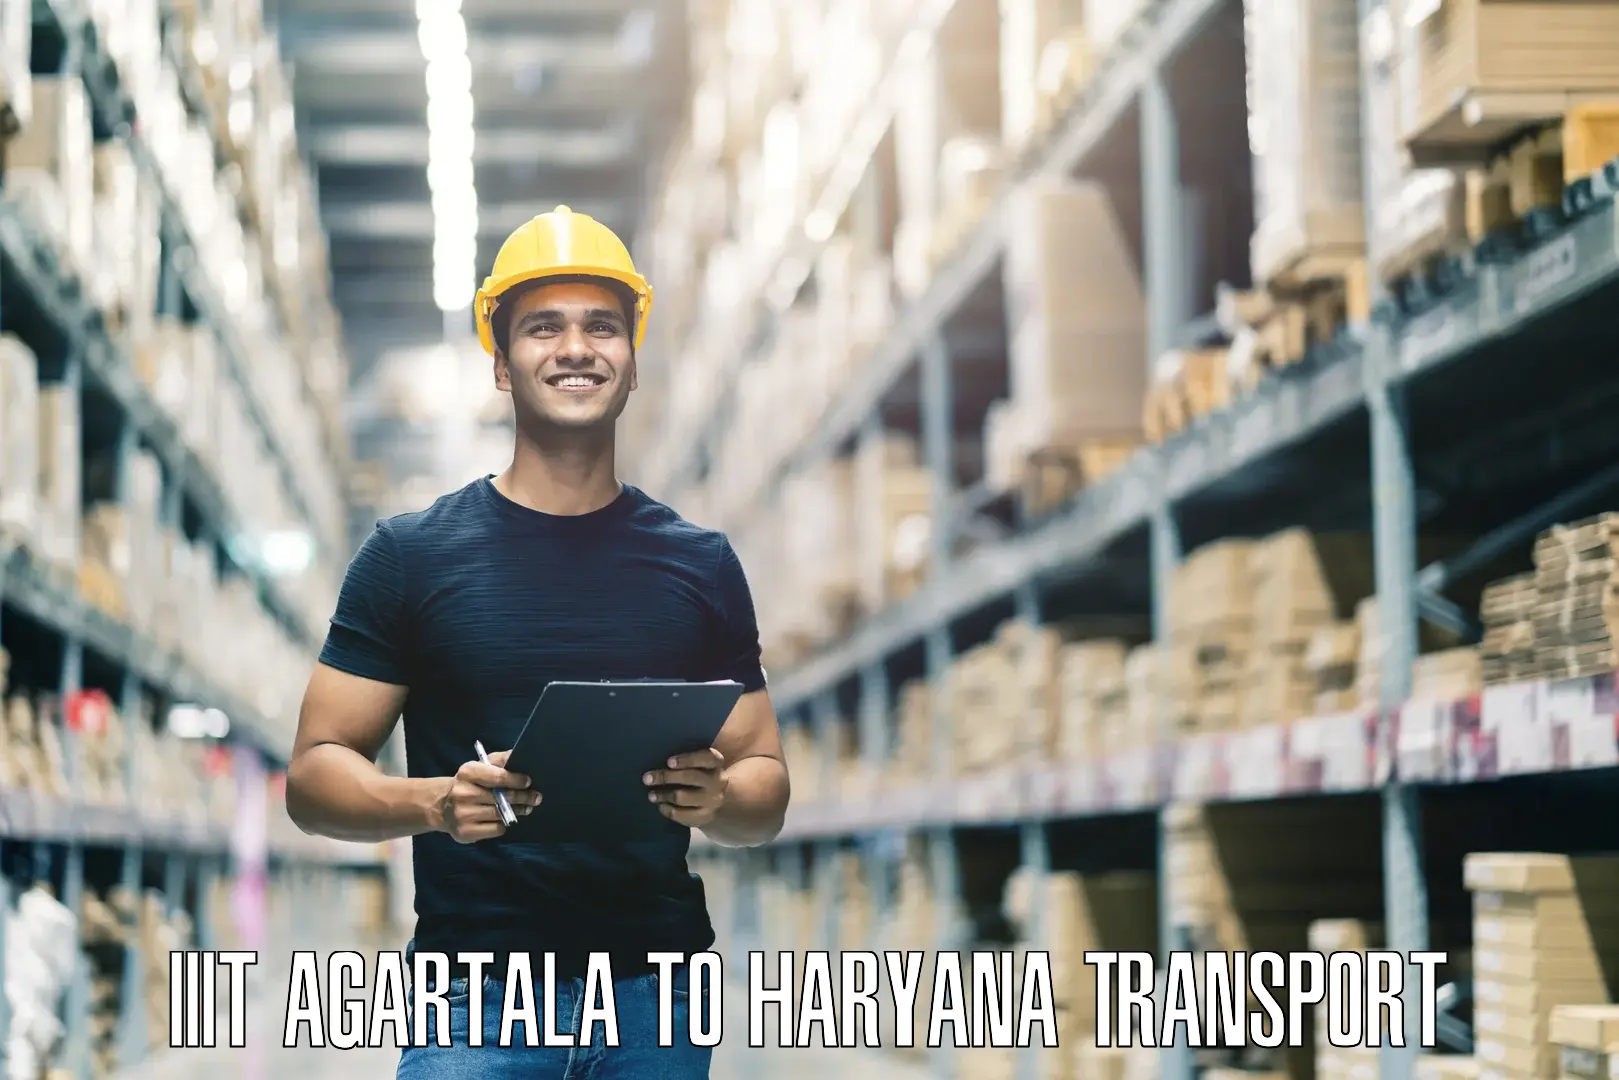 Transport shared services IIIT Agartala to Barwala